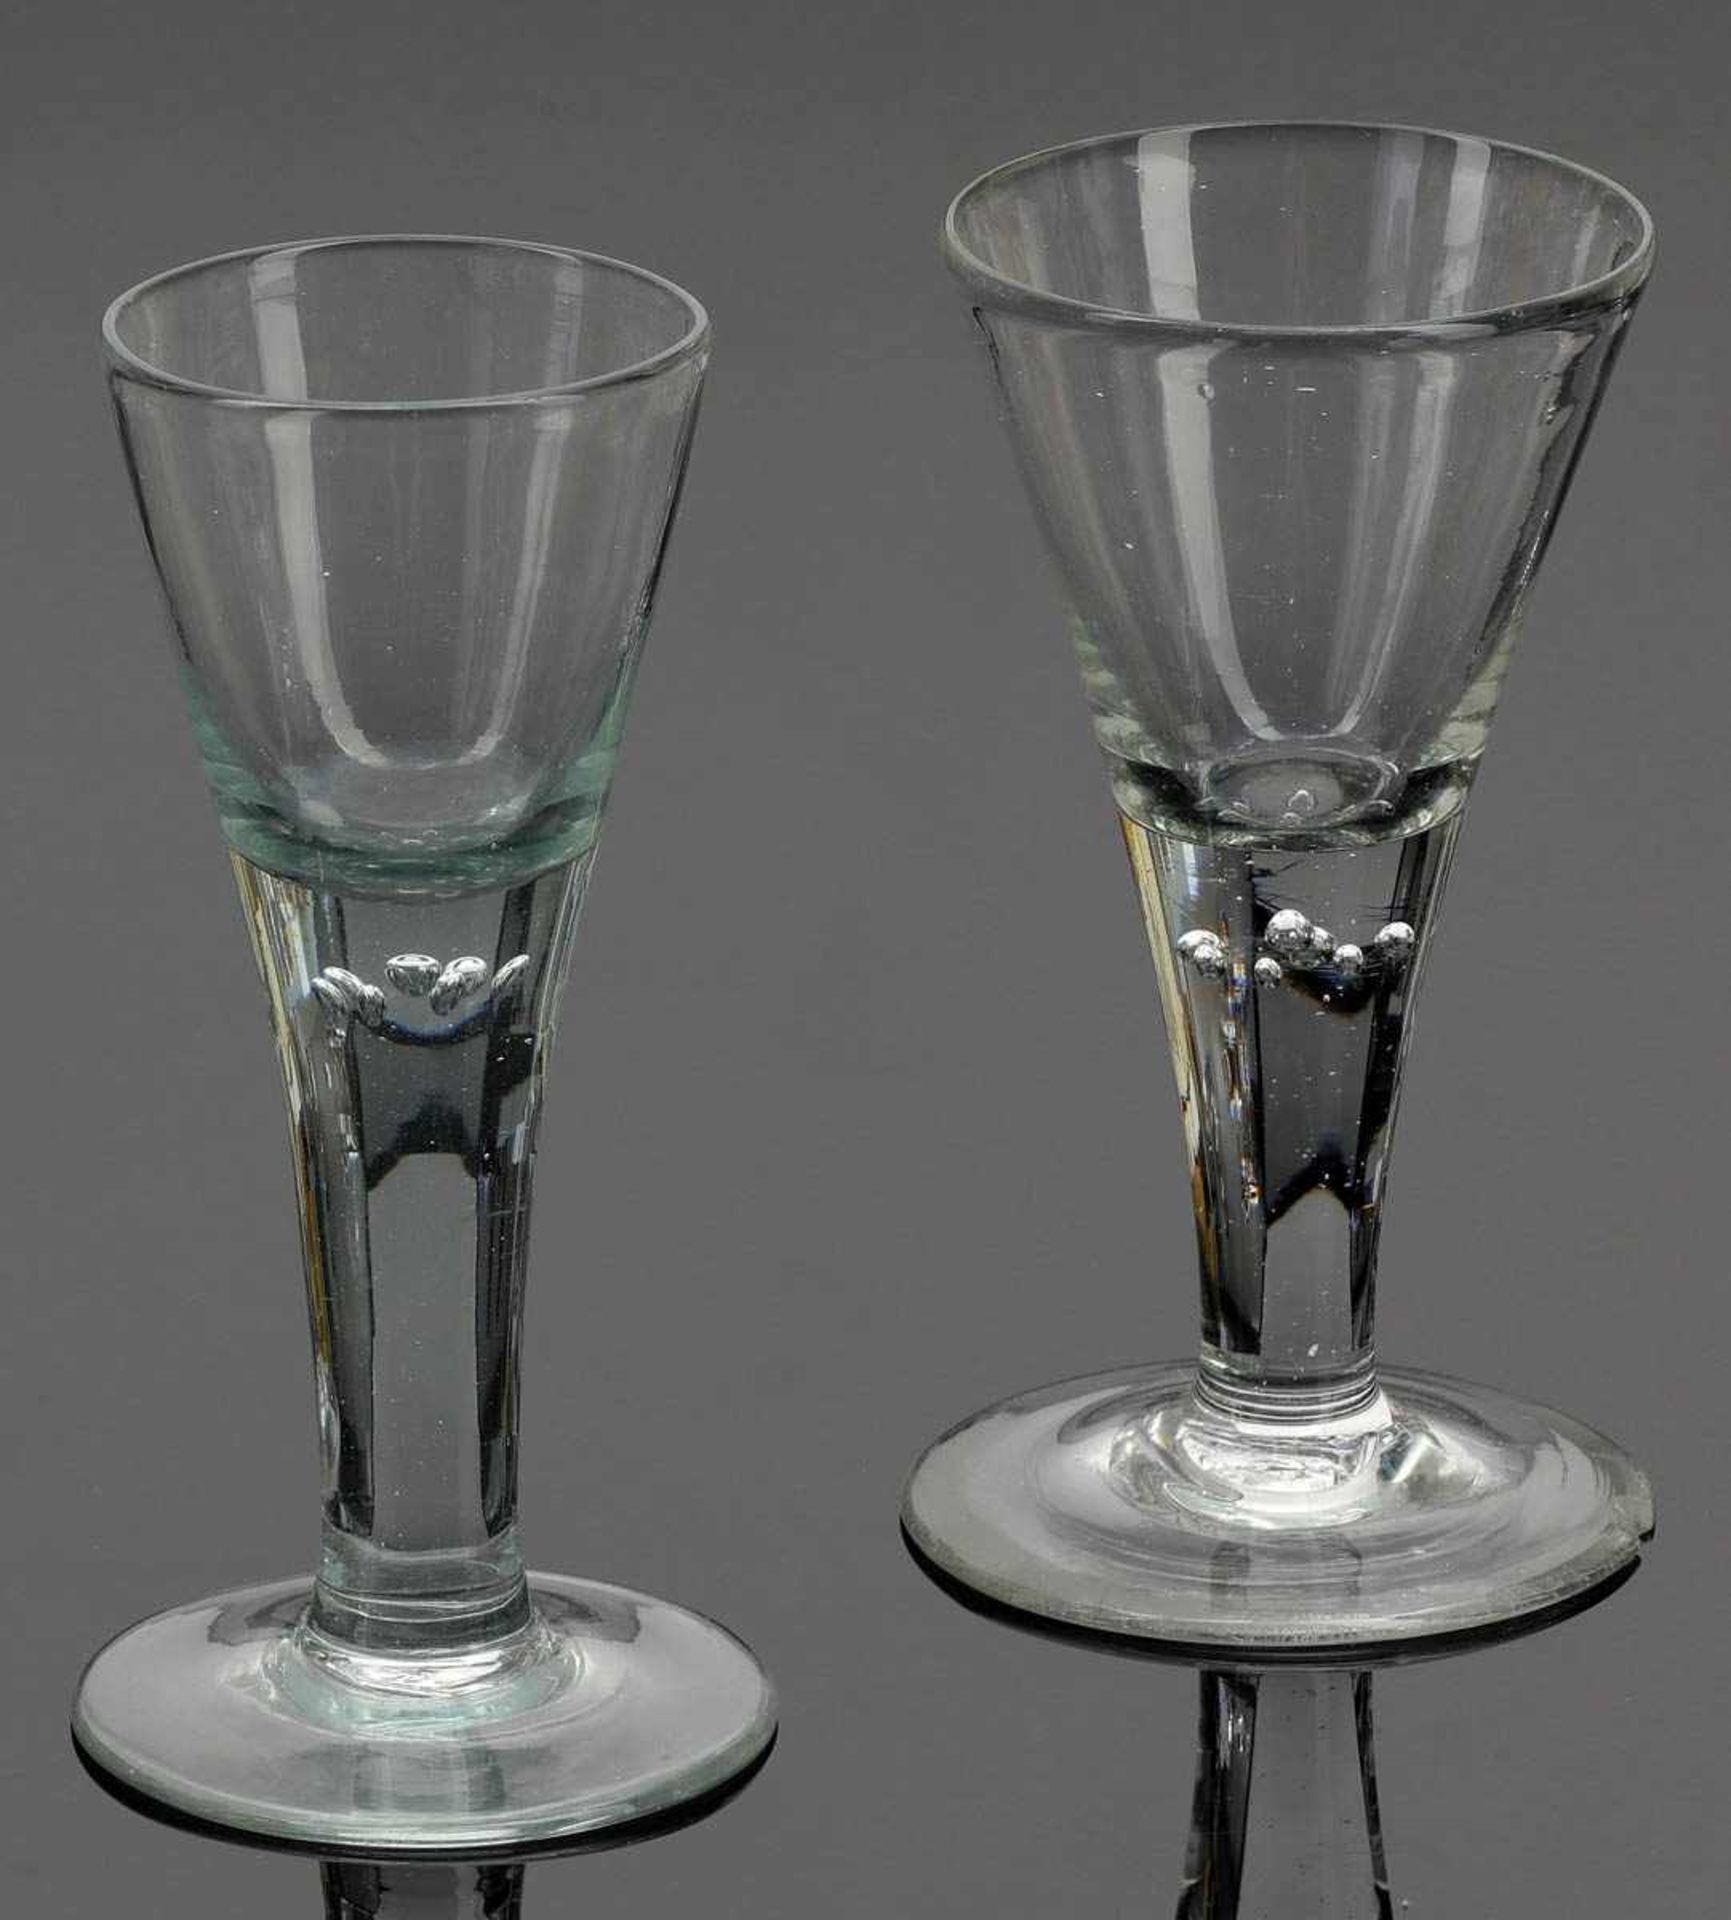 Kelchglas Lauenstein, 2. Hälfte 18. Jh. Farbloses Glas. Abriss. H. 18 cm. - Lit.: Vgl. Alheidis